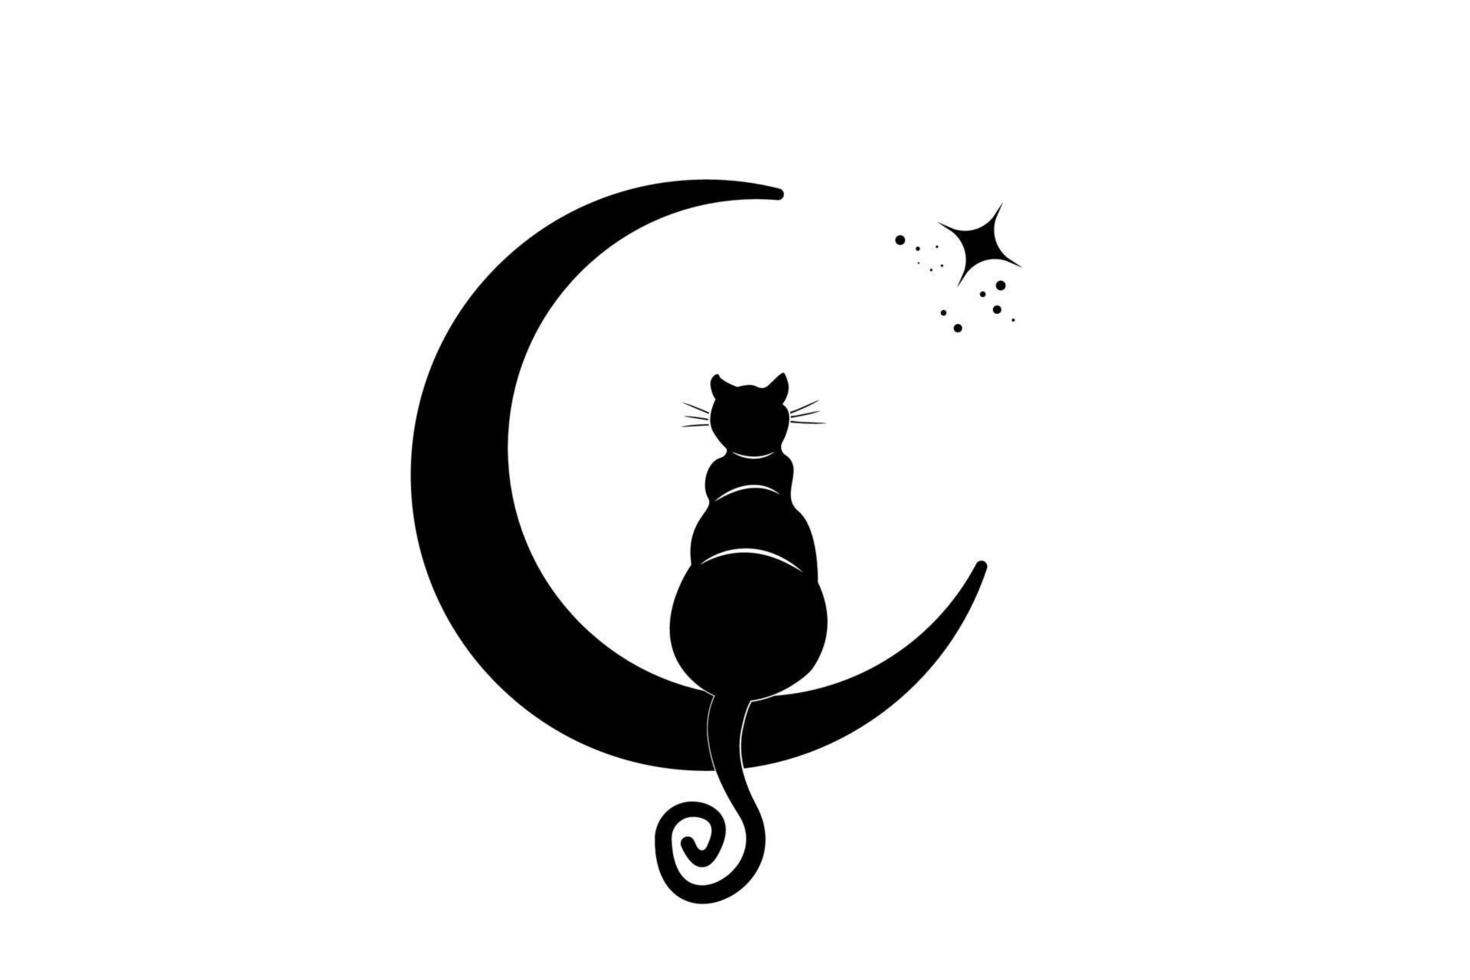 gato preto sentado na lua crescente, olhe para as estrelas. símbolo do logotipo da wicca, estilo boho, ícone de tatuagem. ilustração vetorial isolada no fundo branco vetor